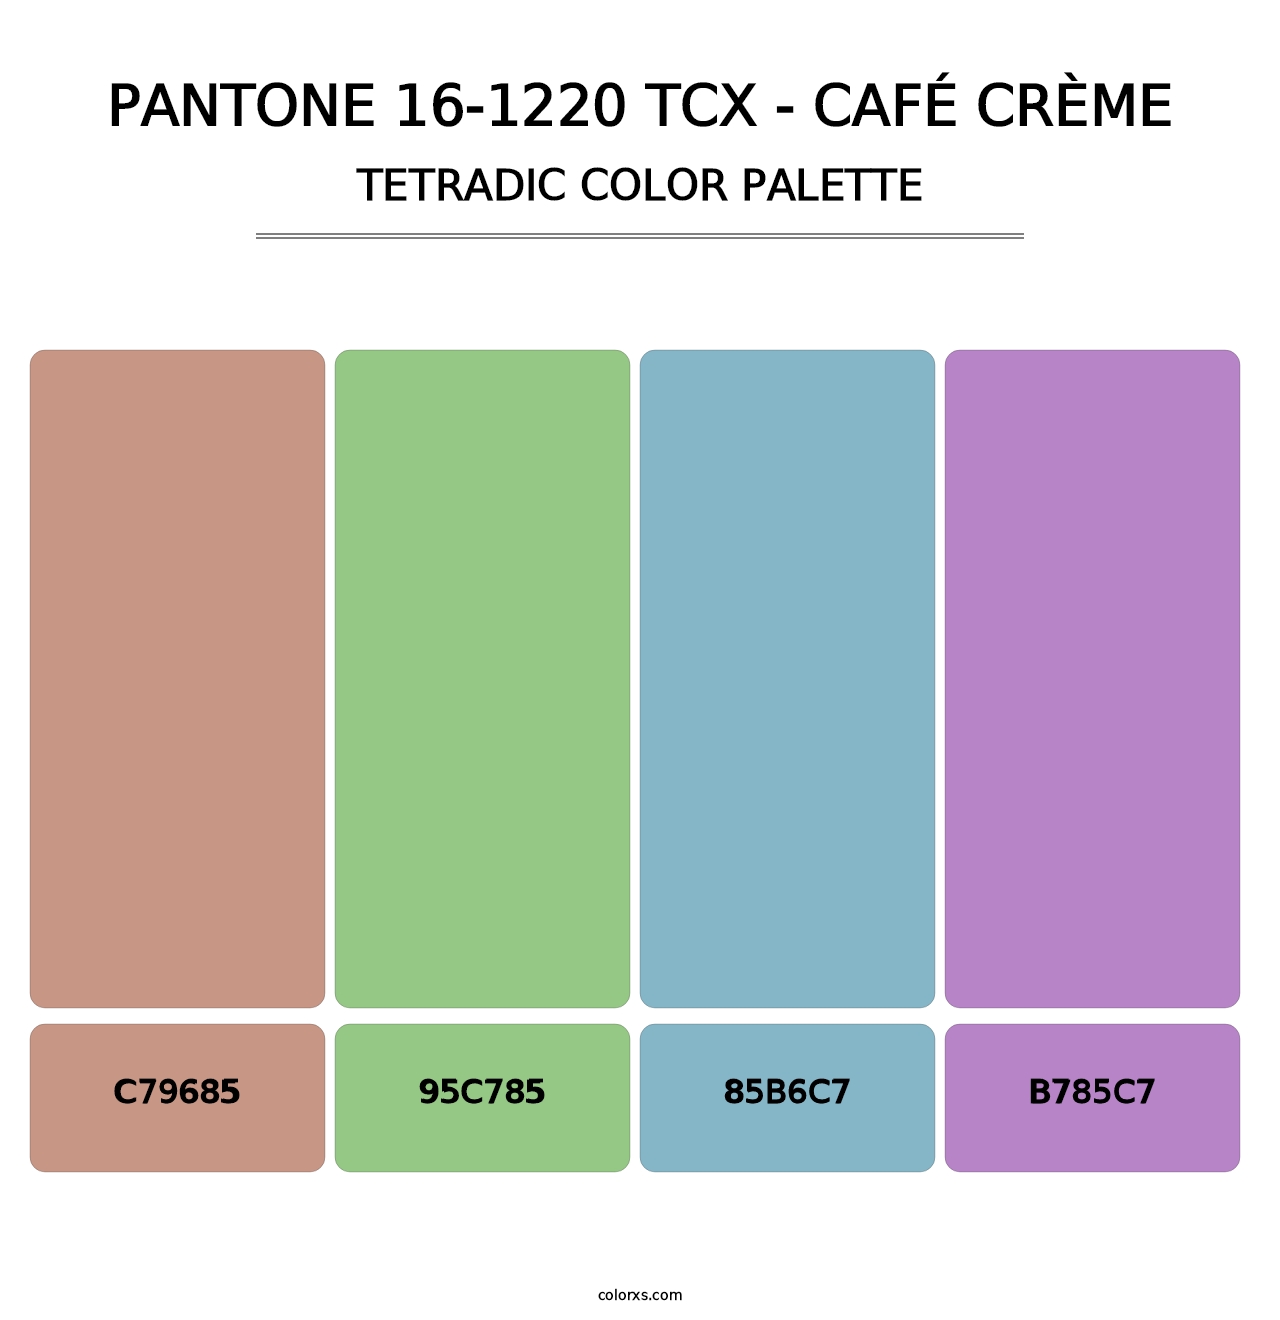 PANTONE 16-1220 TCX - Café Crème - Tetradic Color Palette